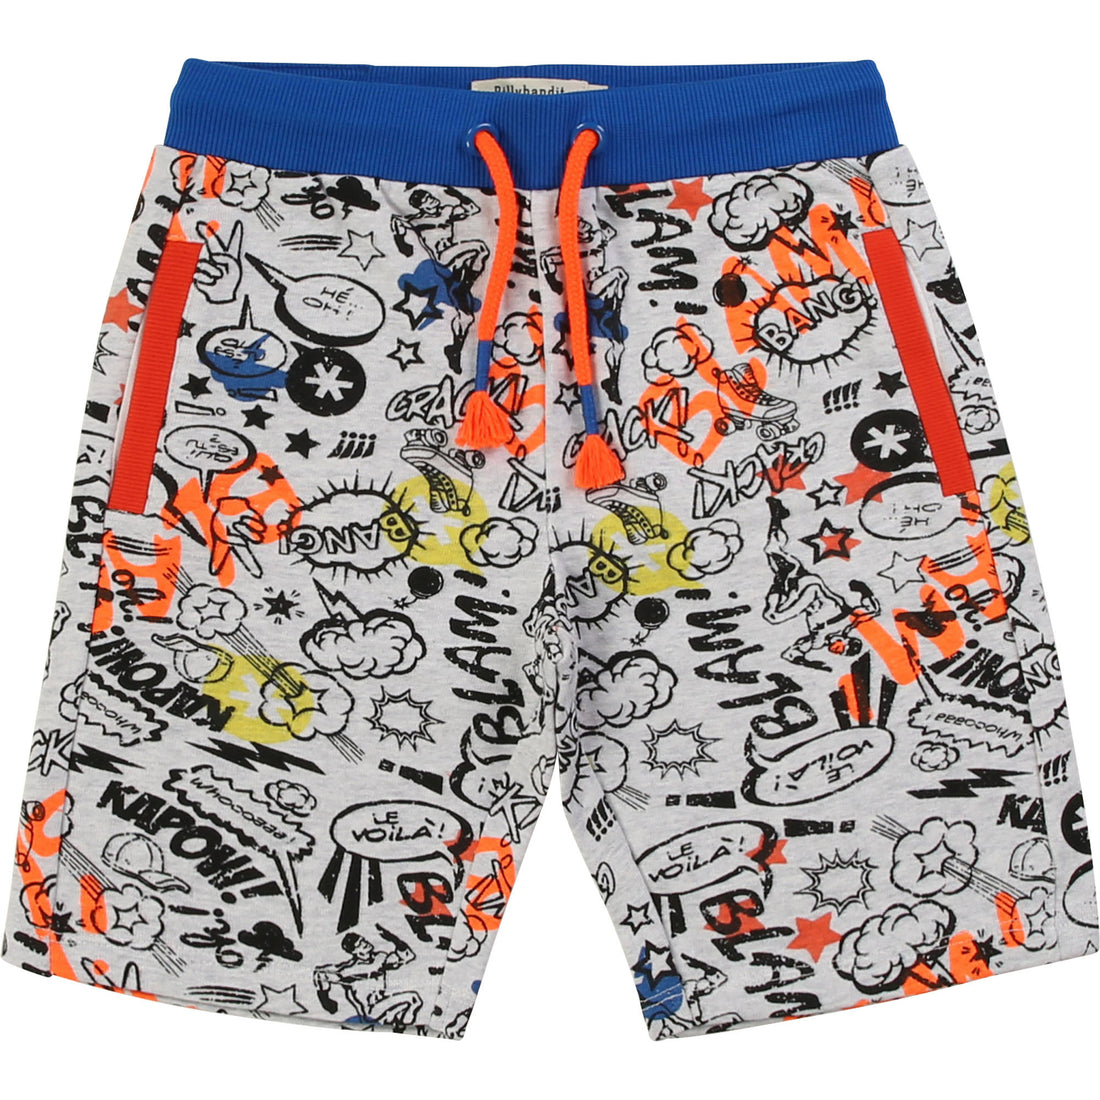 billybandit-bermuda-shorts-belt-summer-unique- (1)